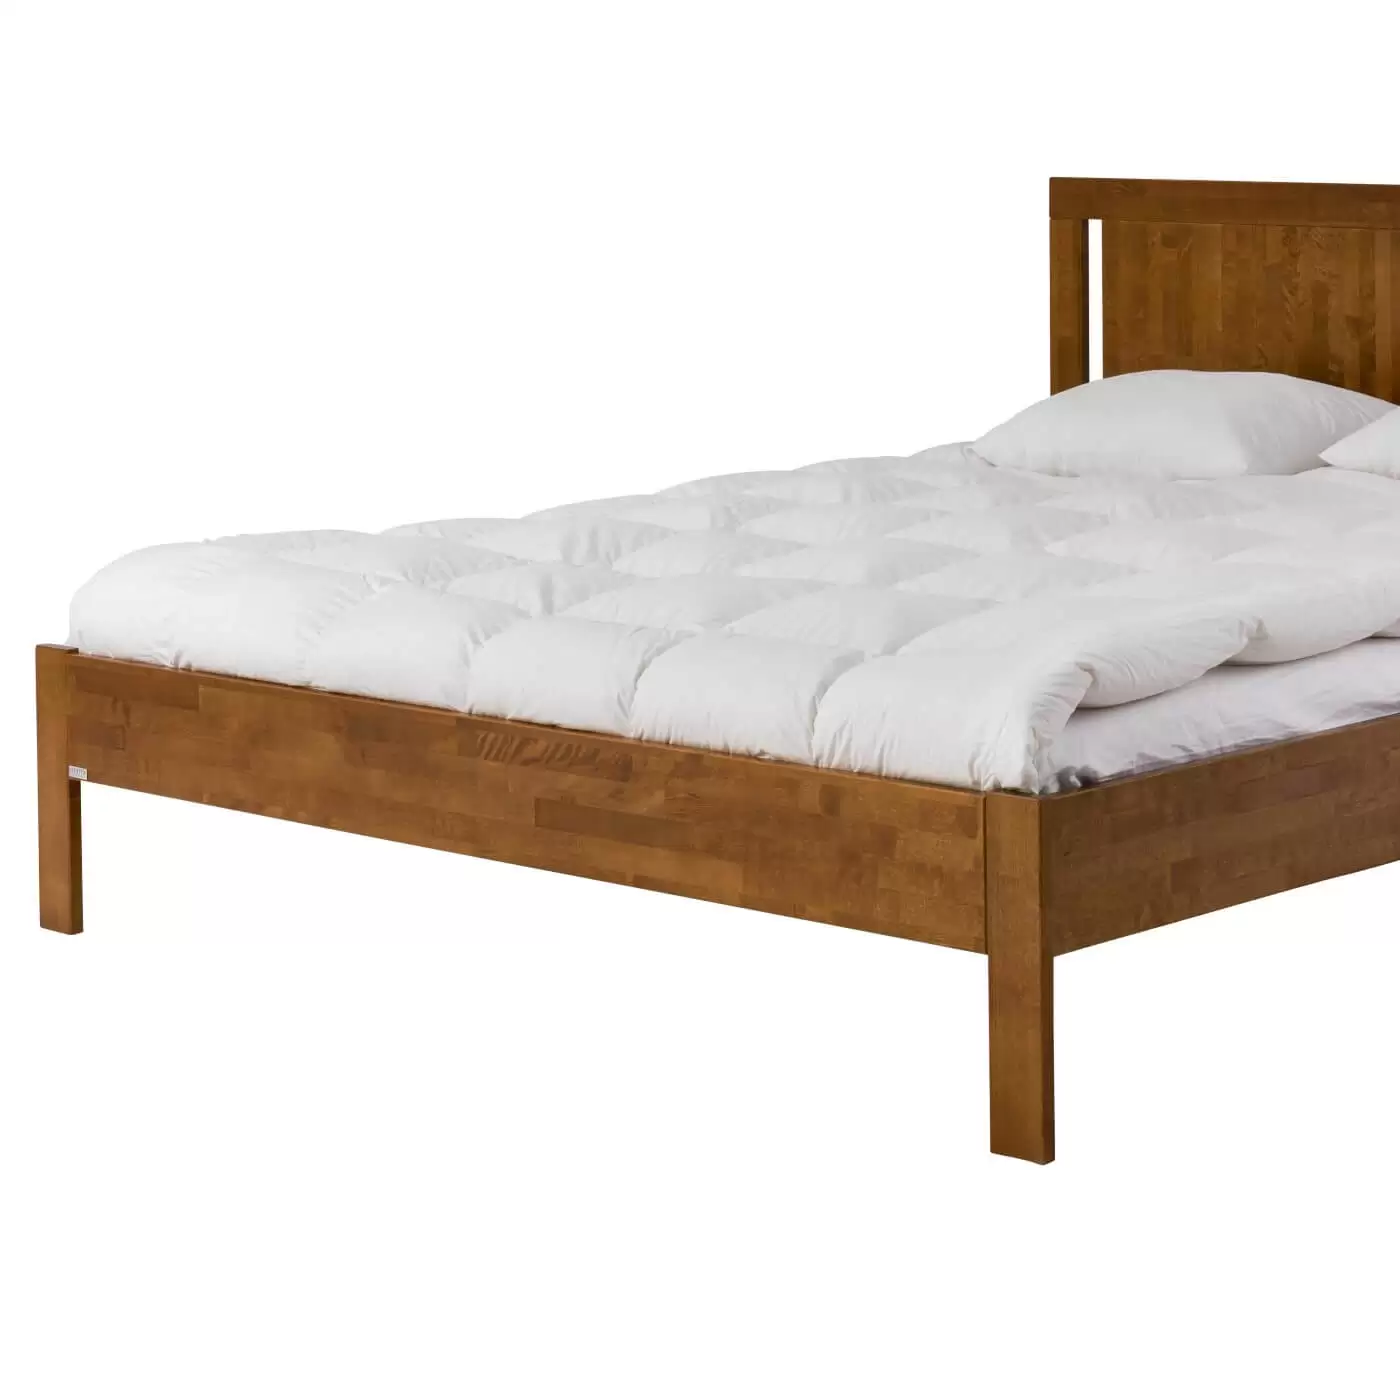 Łóżko dwuosobowe drewniane KOLI kolor orzech. Przybliżony widok na wysokie proste nóżki łóżka 2 osobowego 160x200 z drewna brzozy w kolorze orzech. Skandynawski design